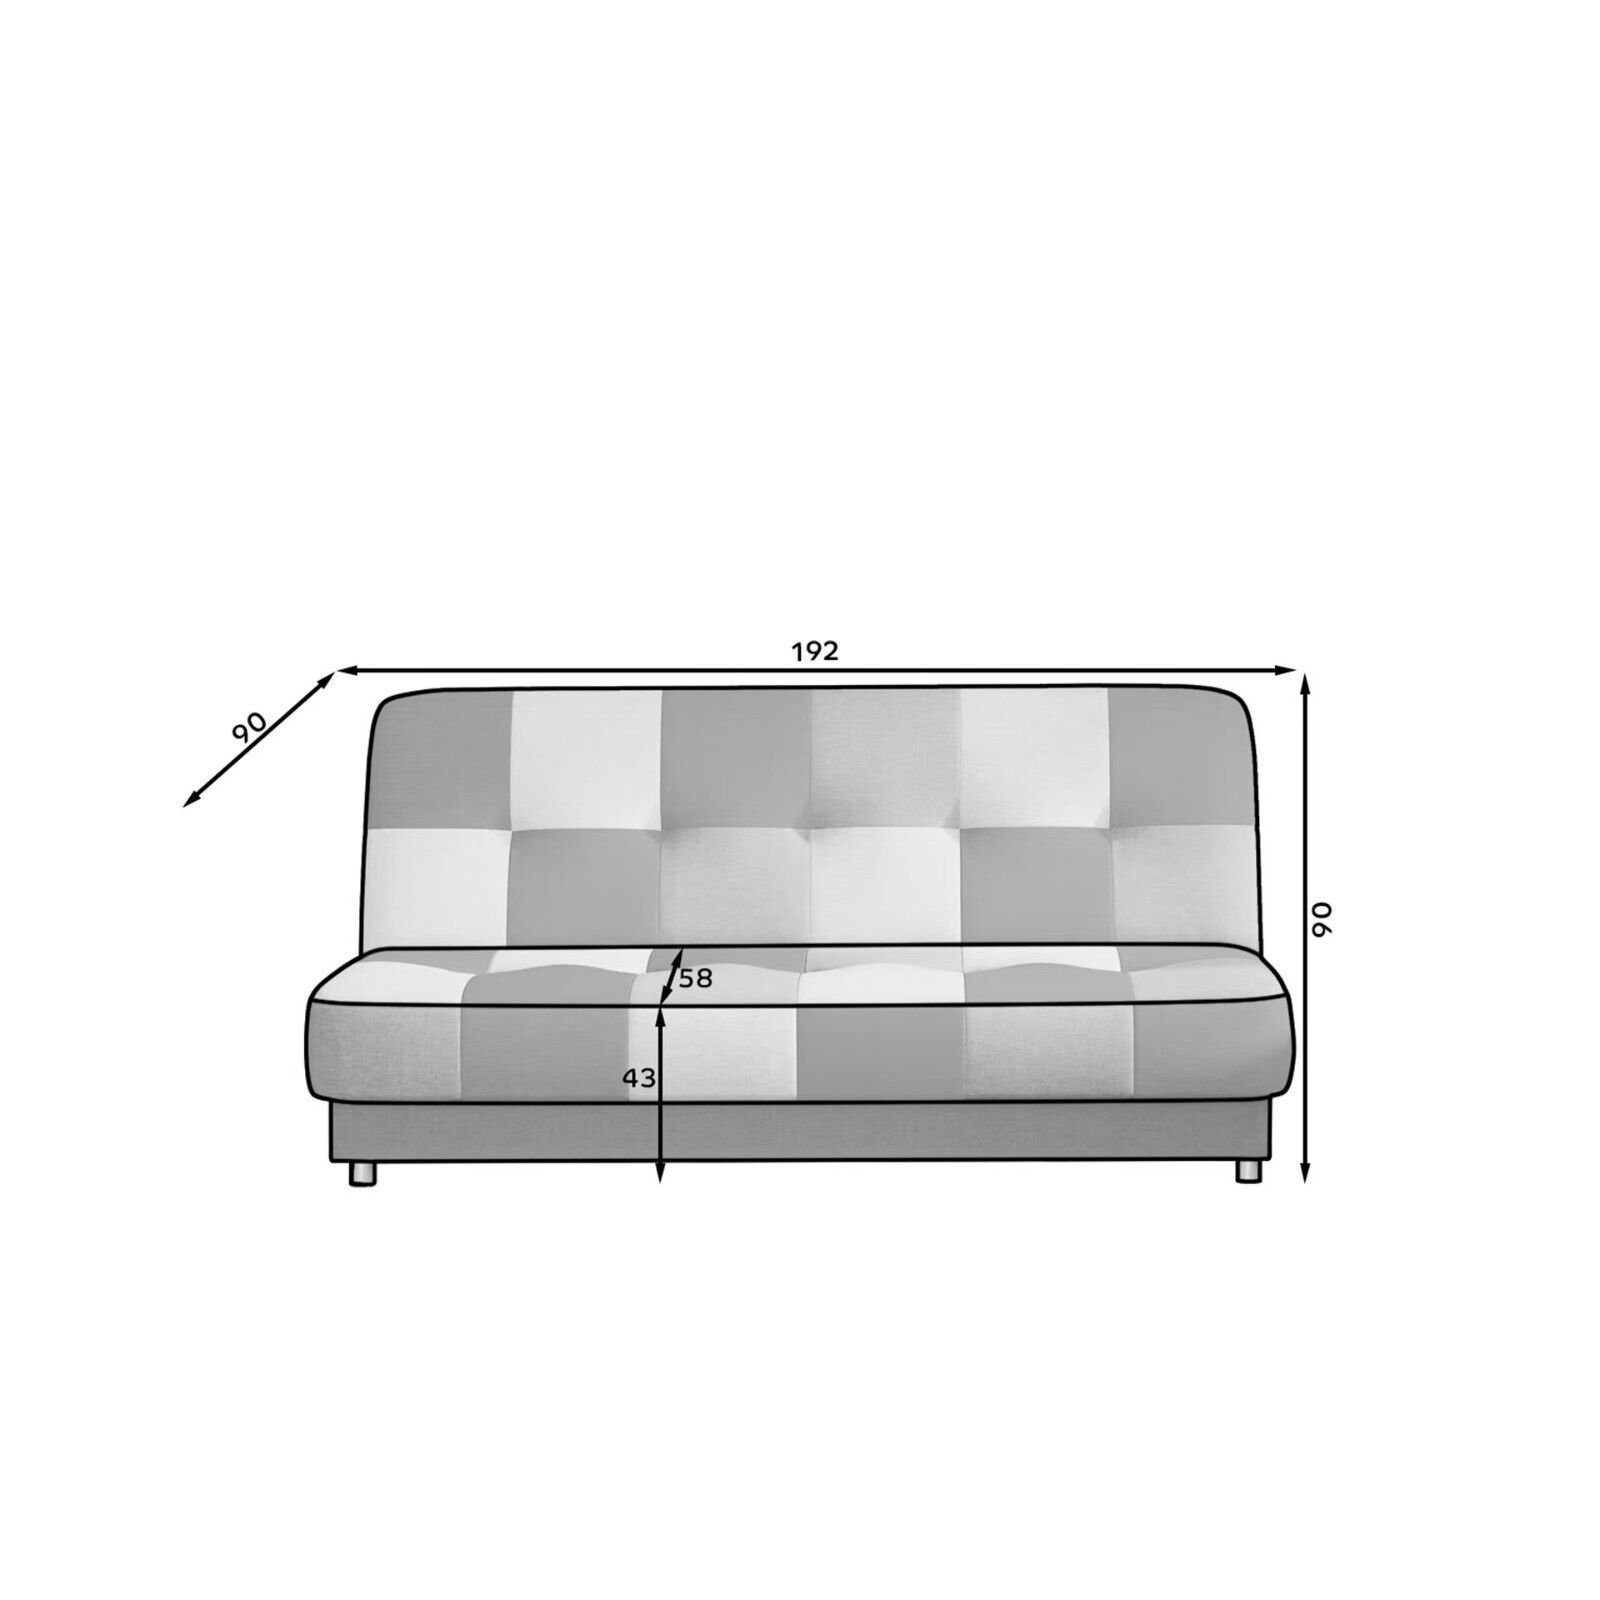 JVmoebel 3 Made Modern Wohnzimmer in Sitzer Luxus Sofa SOFORT, Teile, Couch Europa Sofa 1